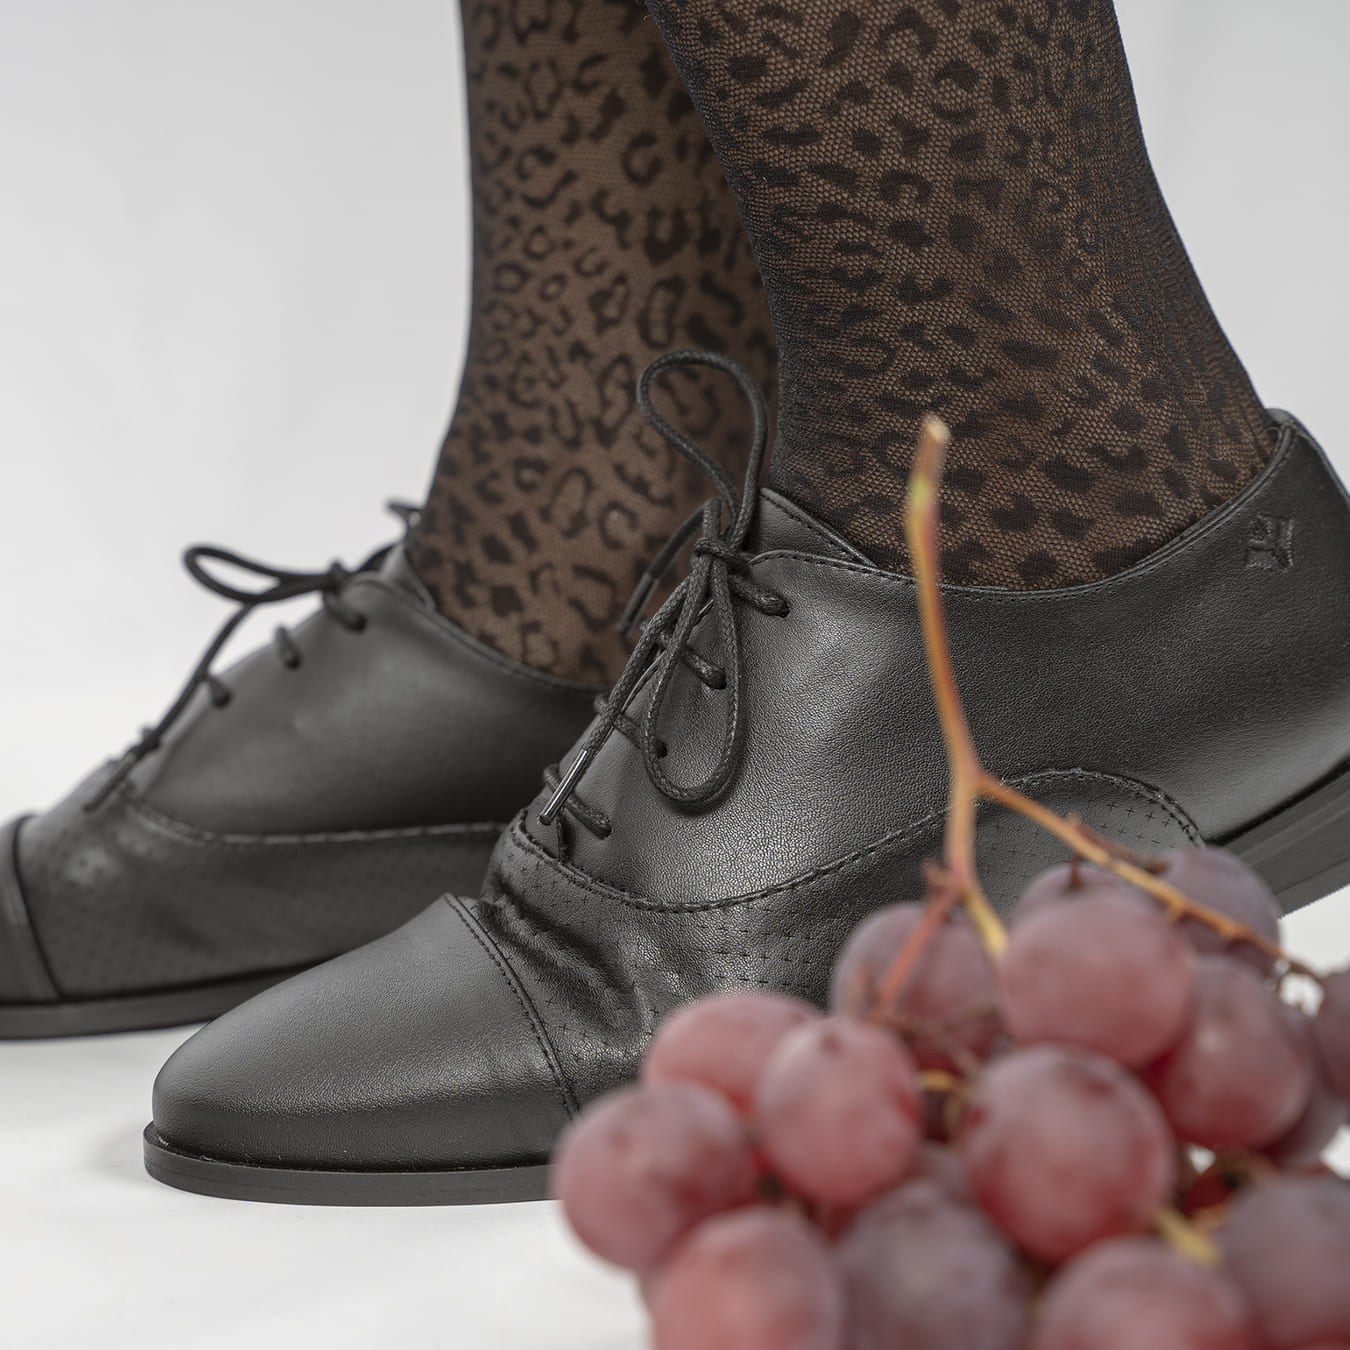 Chaussures de ville végan et écologique femme richelieu noire cuir végétal - Aiko Cog